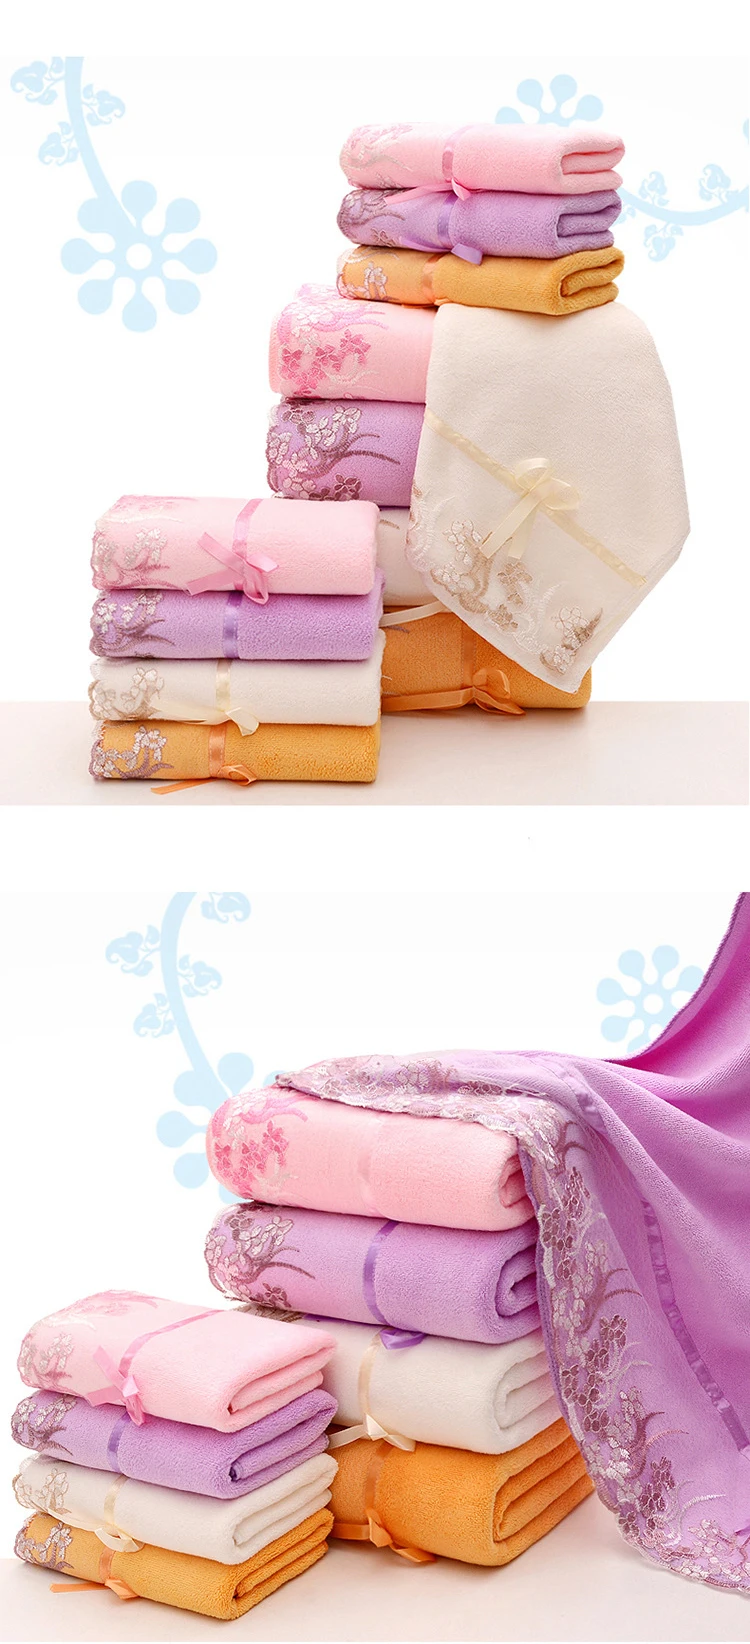 SKTEZO 2 шт. микрофибры кружева вышивка мультфильм мягкое впитывающее полотенце полотенца для ванной полотенца для взрослых